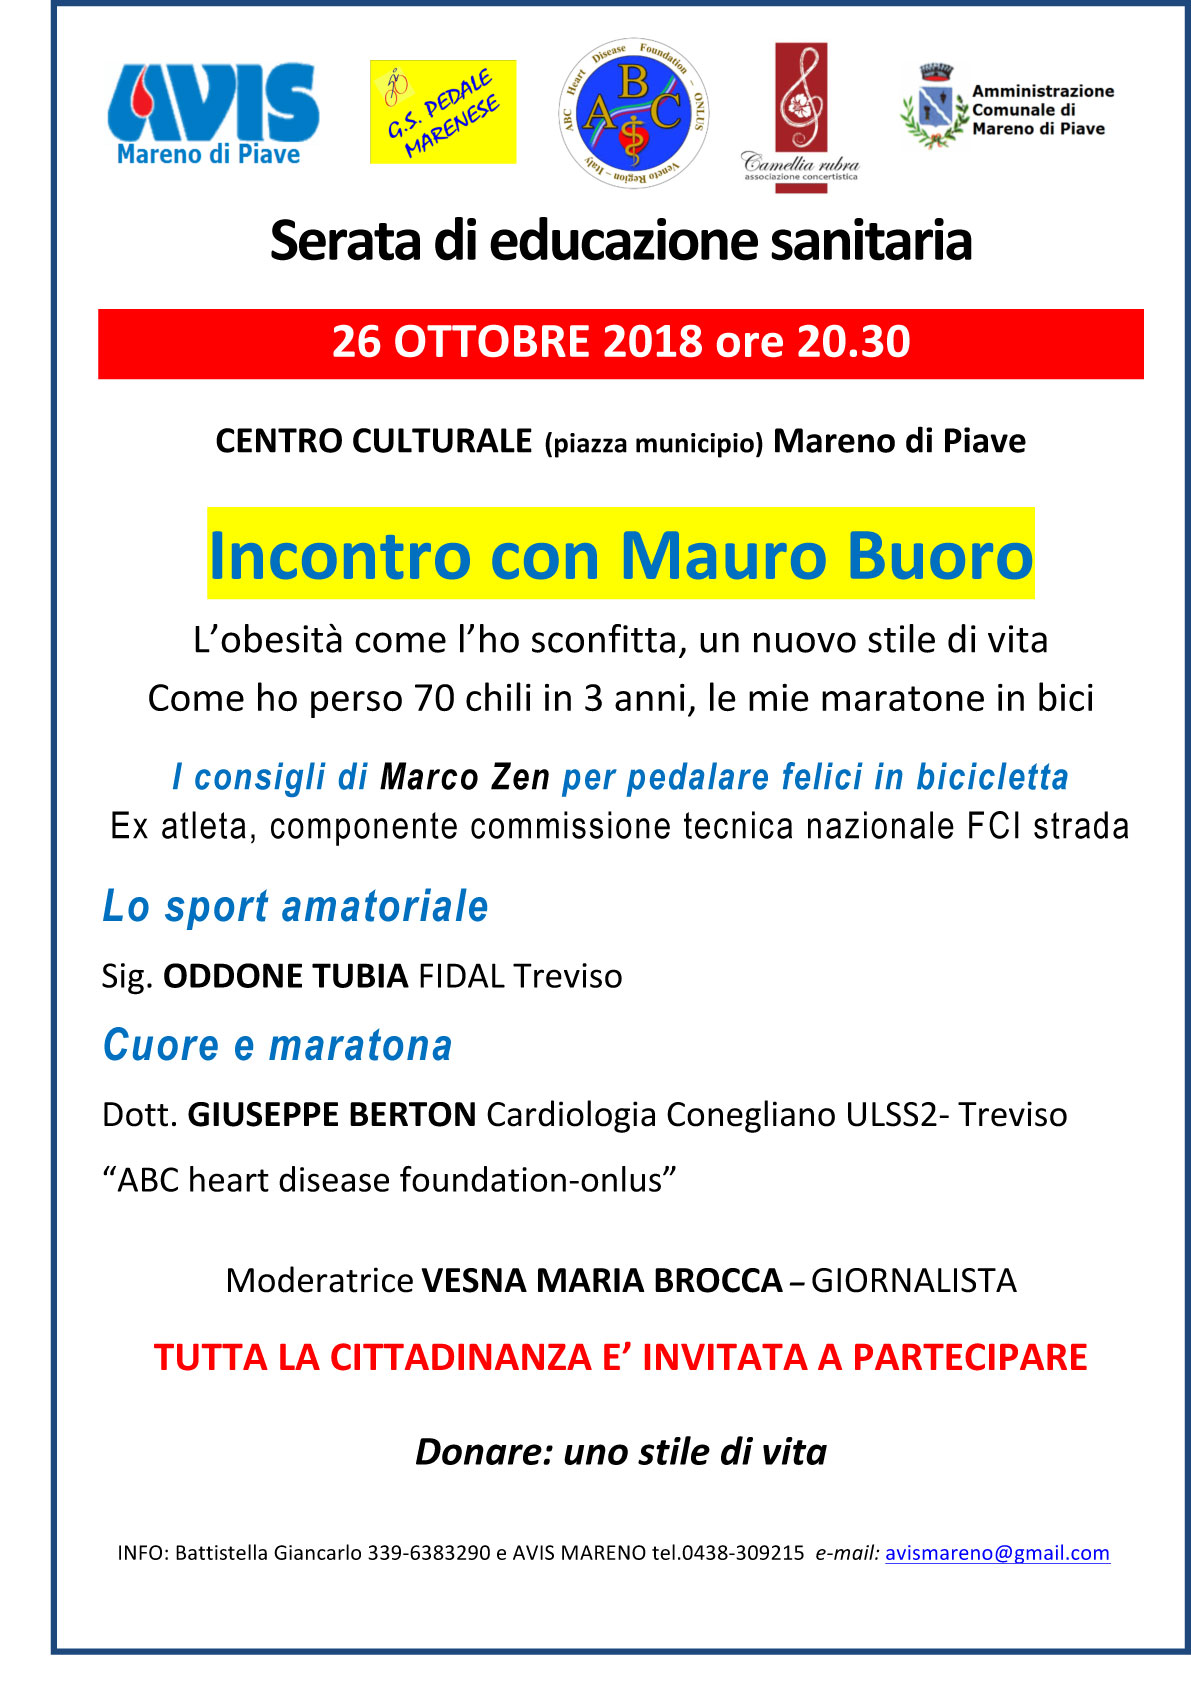 Serata di educazione sanitaria - Mareno di Piave 26 ottobre 2018